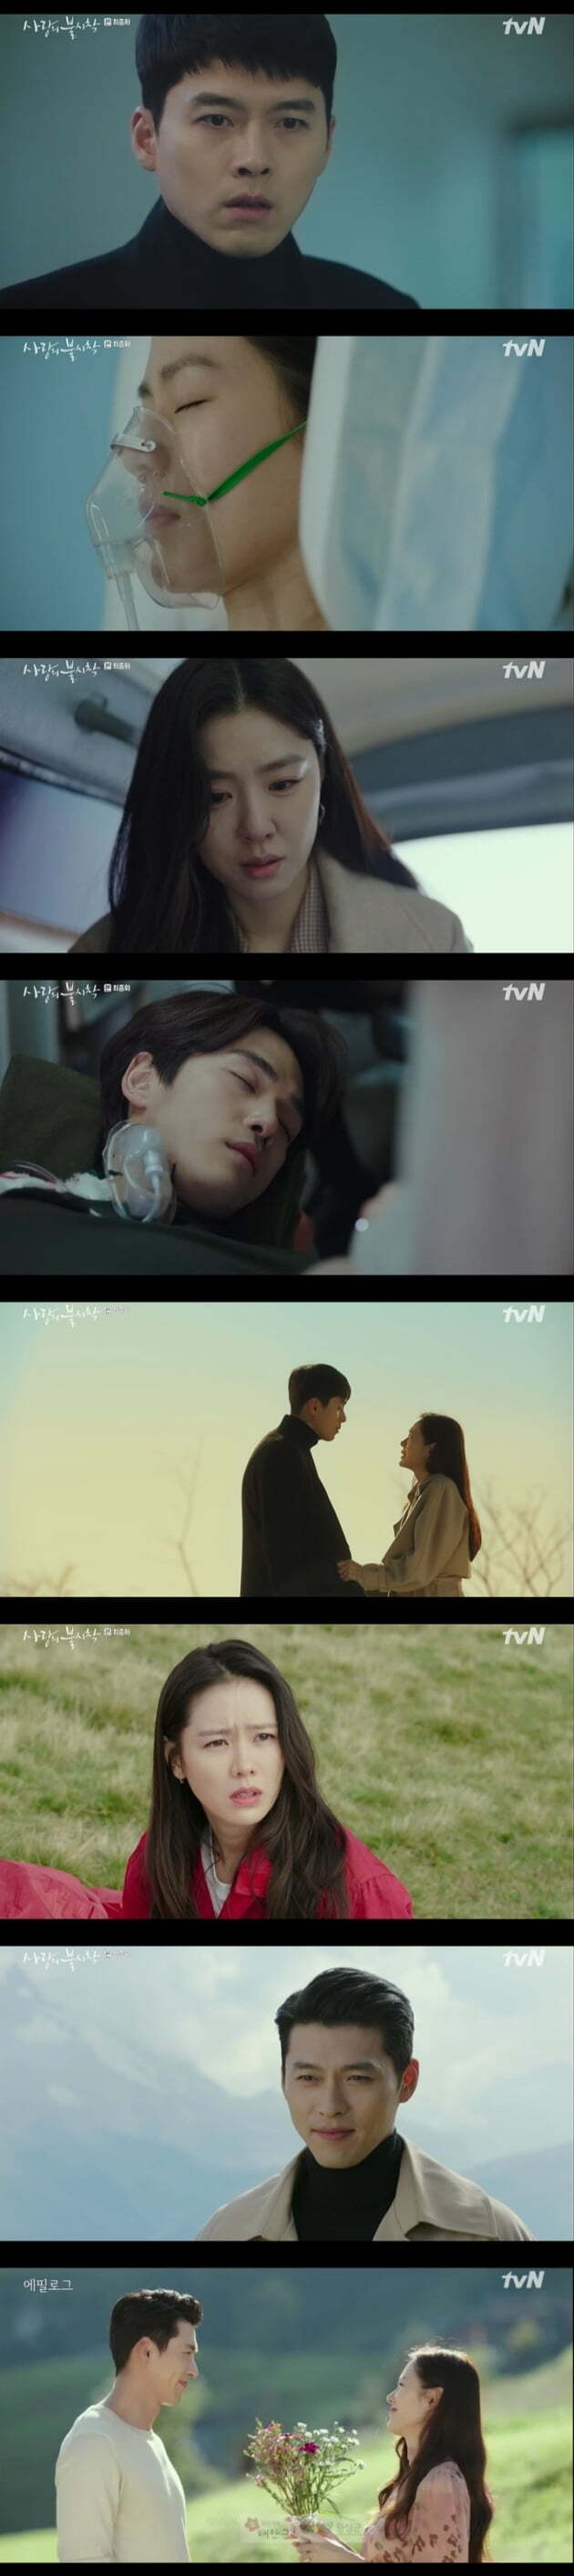 손예진, 현빈 주연의 tvN 주말드라마 '사랑의 불시착'/사진=tvN 주말드라마 '사랑의 불시착'